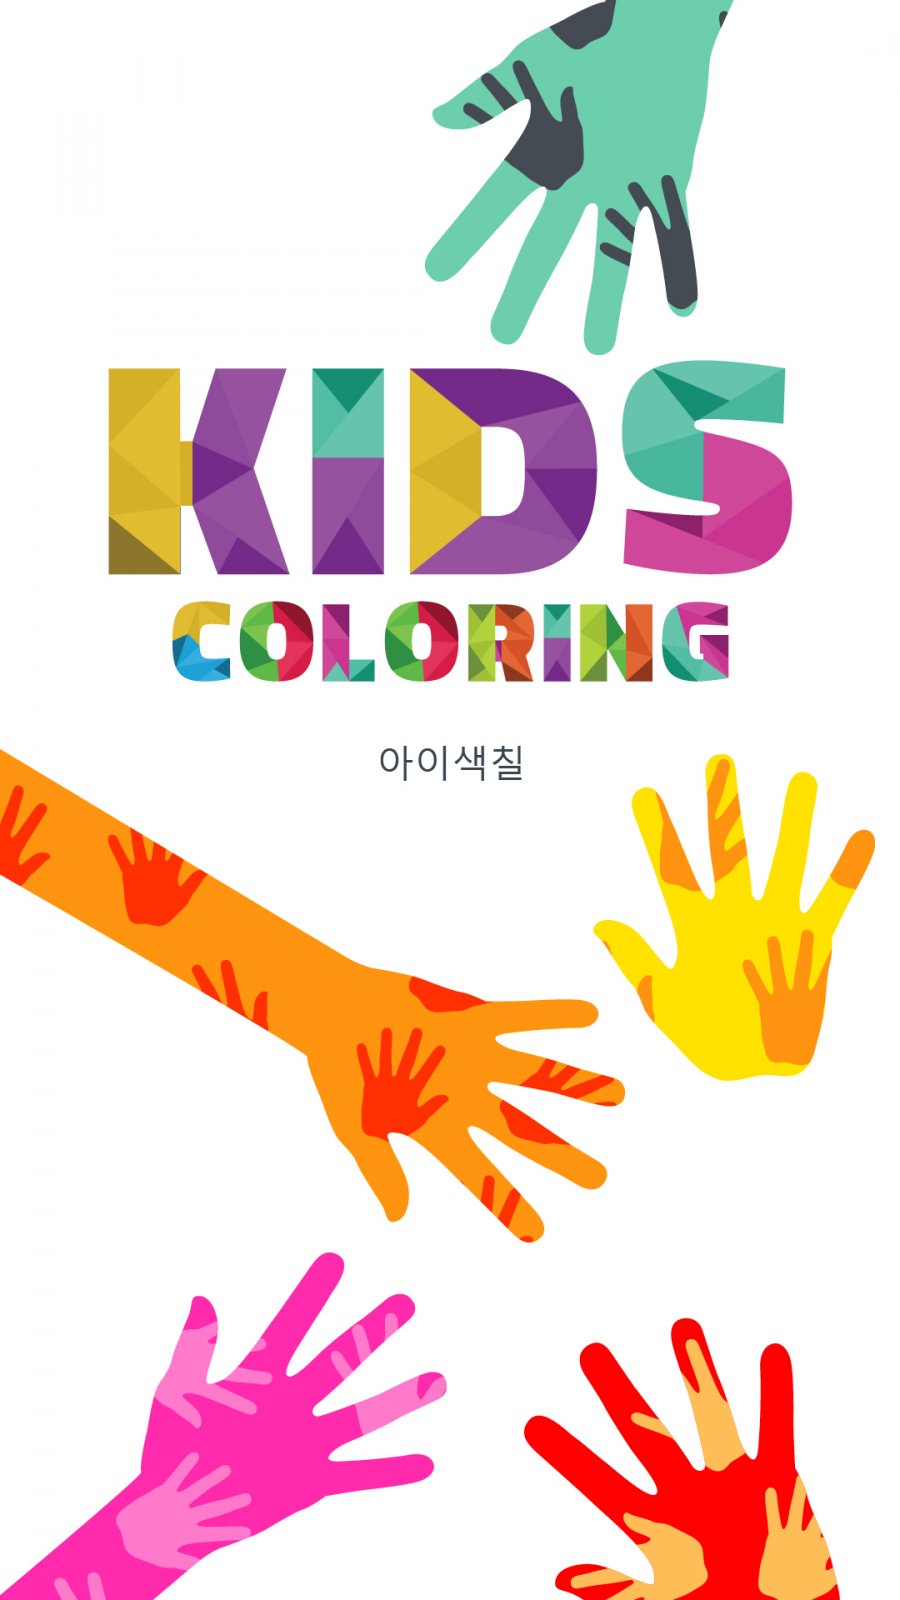 1451459017_kids_coloring_01.jpg